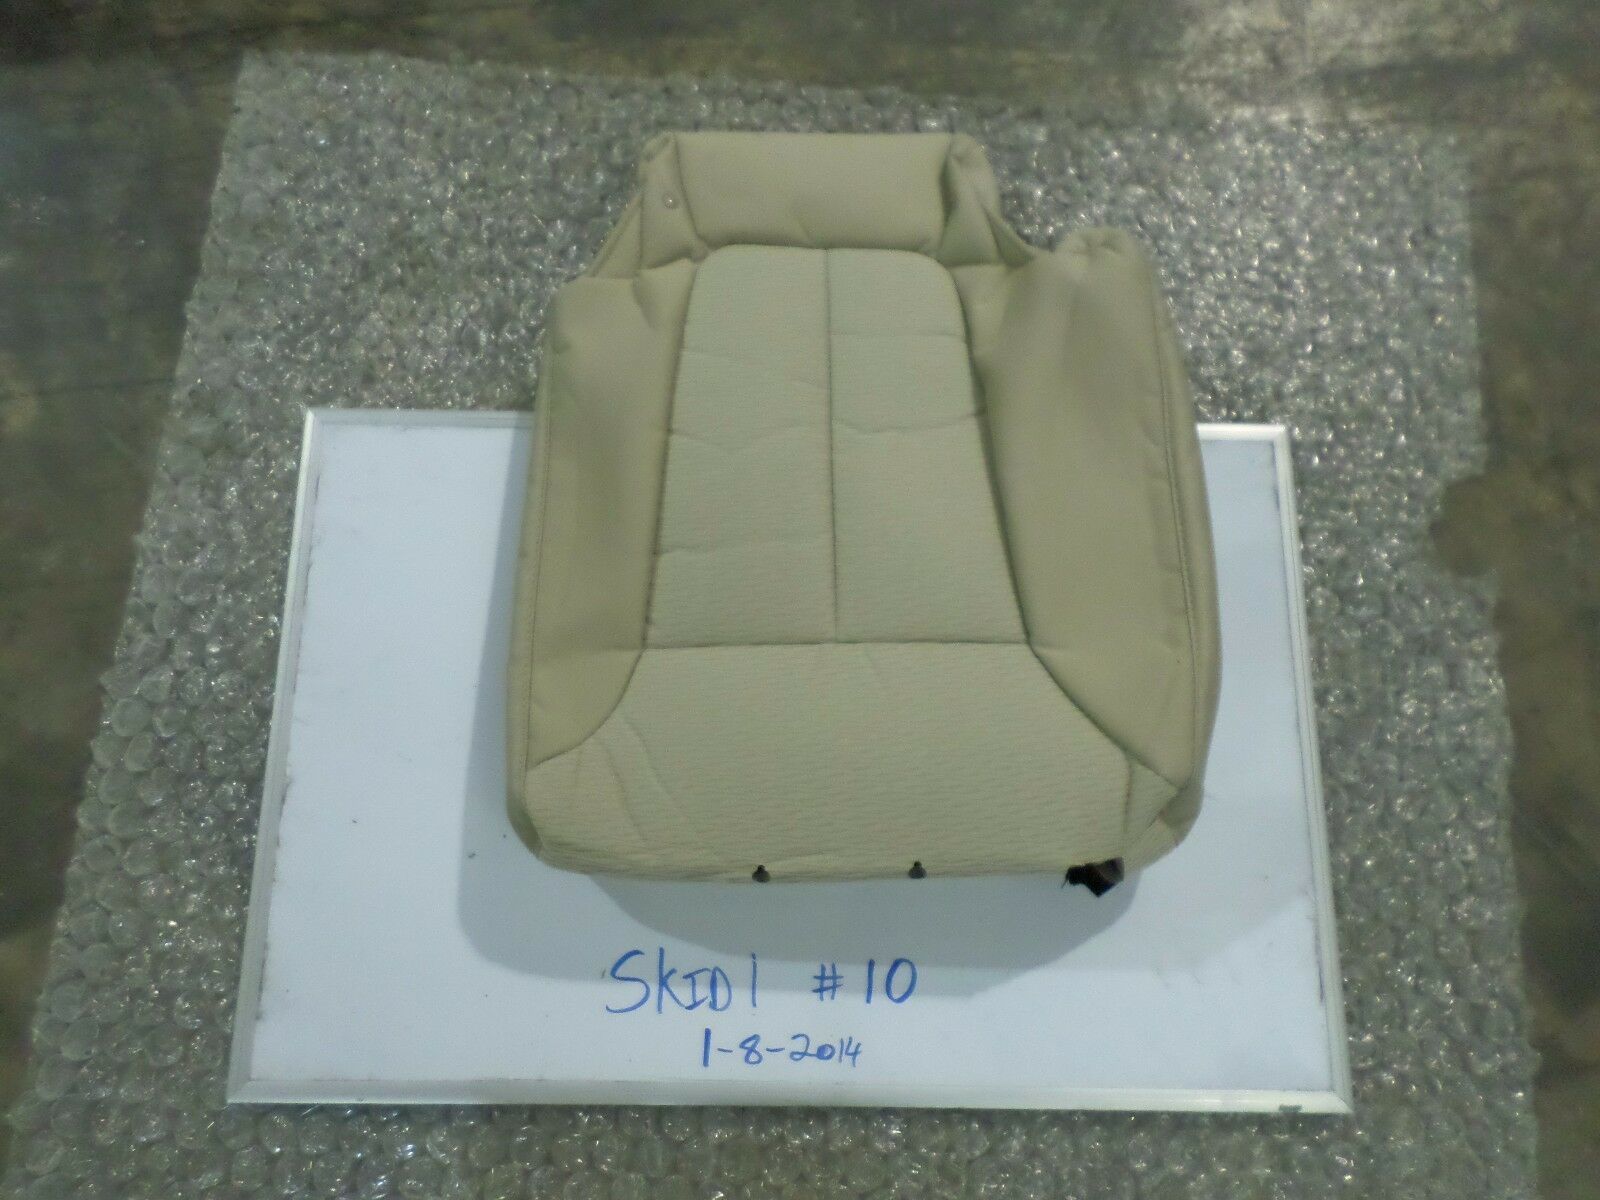 NEW OEM REAR SEAT COVER UPPER HYUNDAI SANTA FE 07-09 BEIGE CLOTH 89460-0W000 J9Y - $49.50